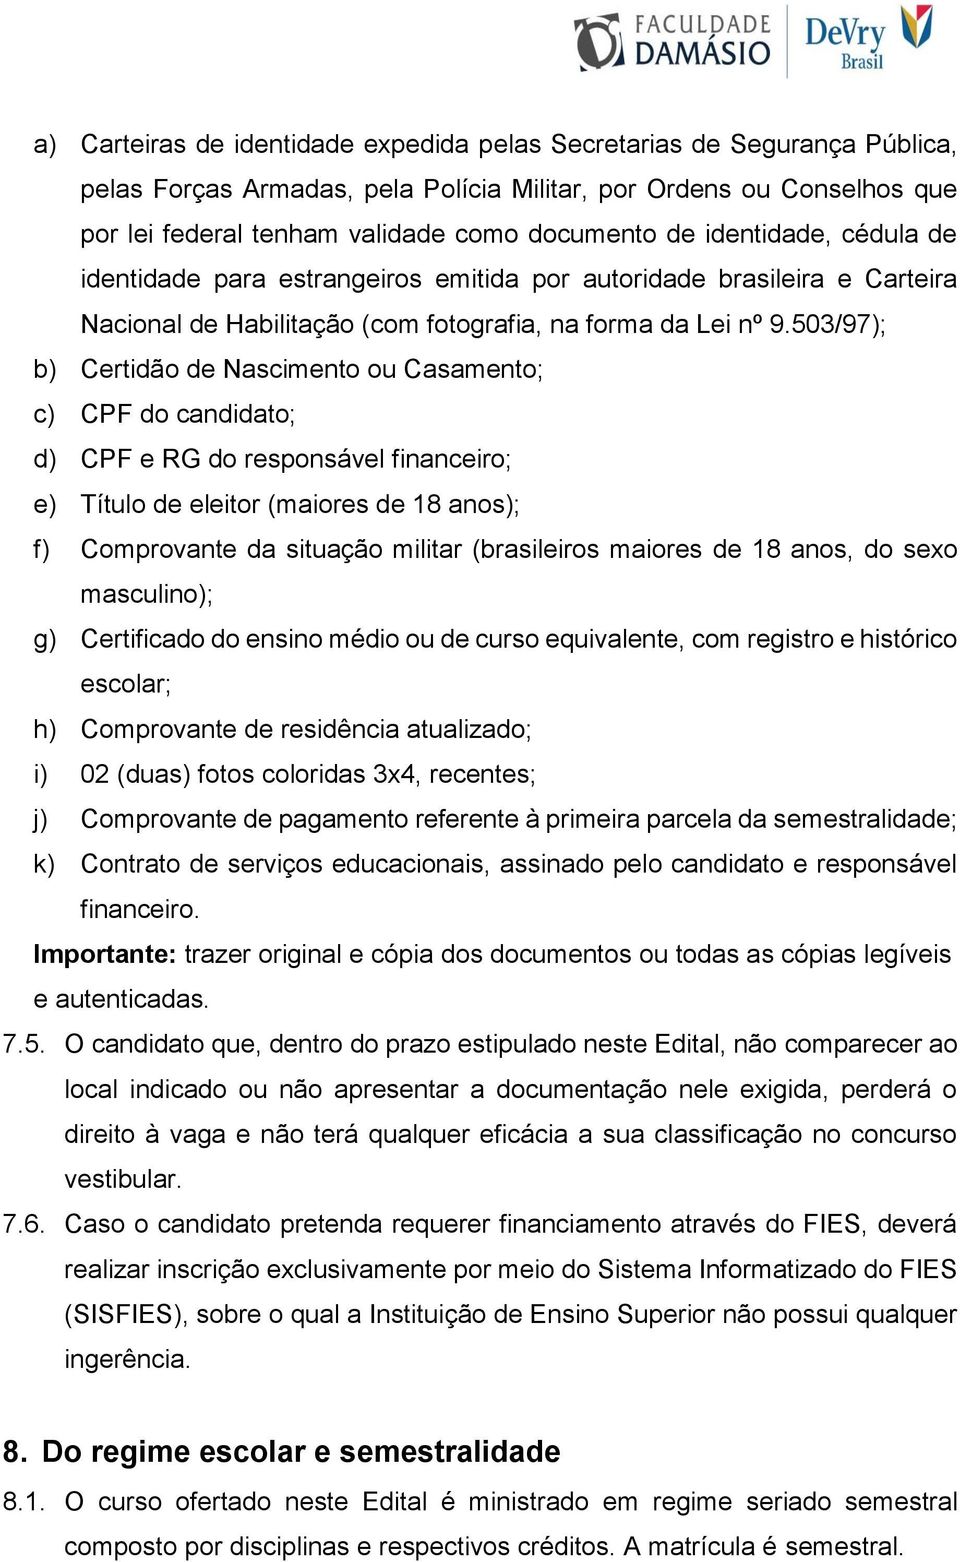 503/97); b) Certidão de Nascimento ou Casamento; c) CPF do candidato; d) CPF e RG do responsável financeiro; e) Título de eleitor (maiores de 18 anos); f) Comprovante da situação militar (brasileiros